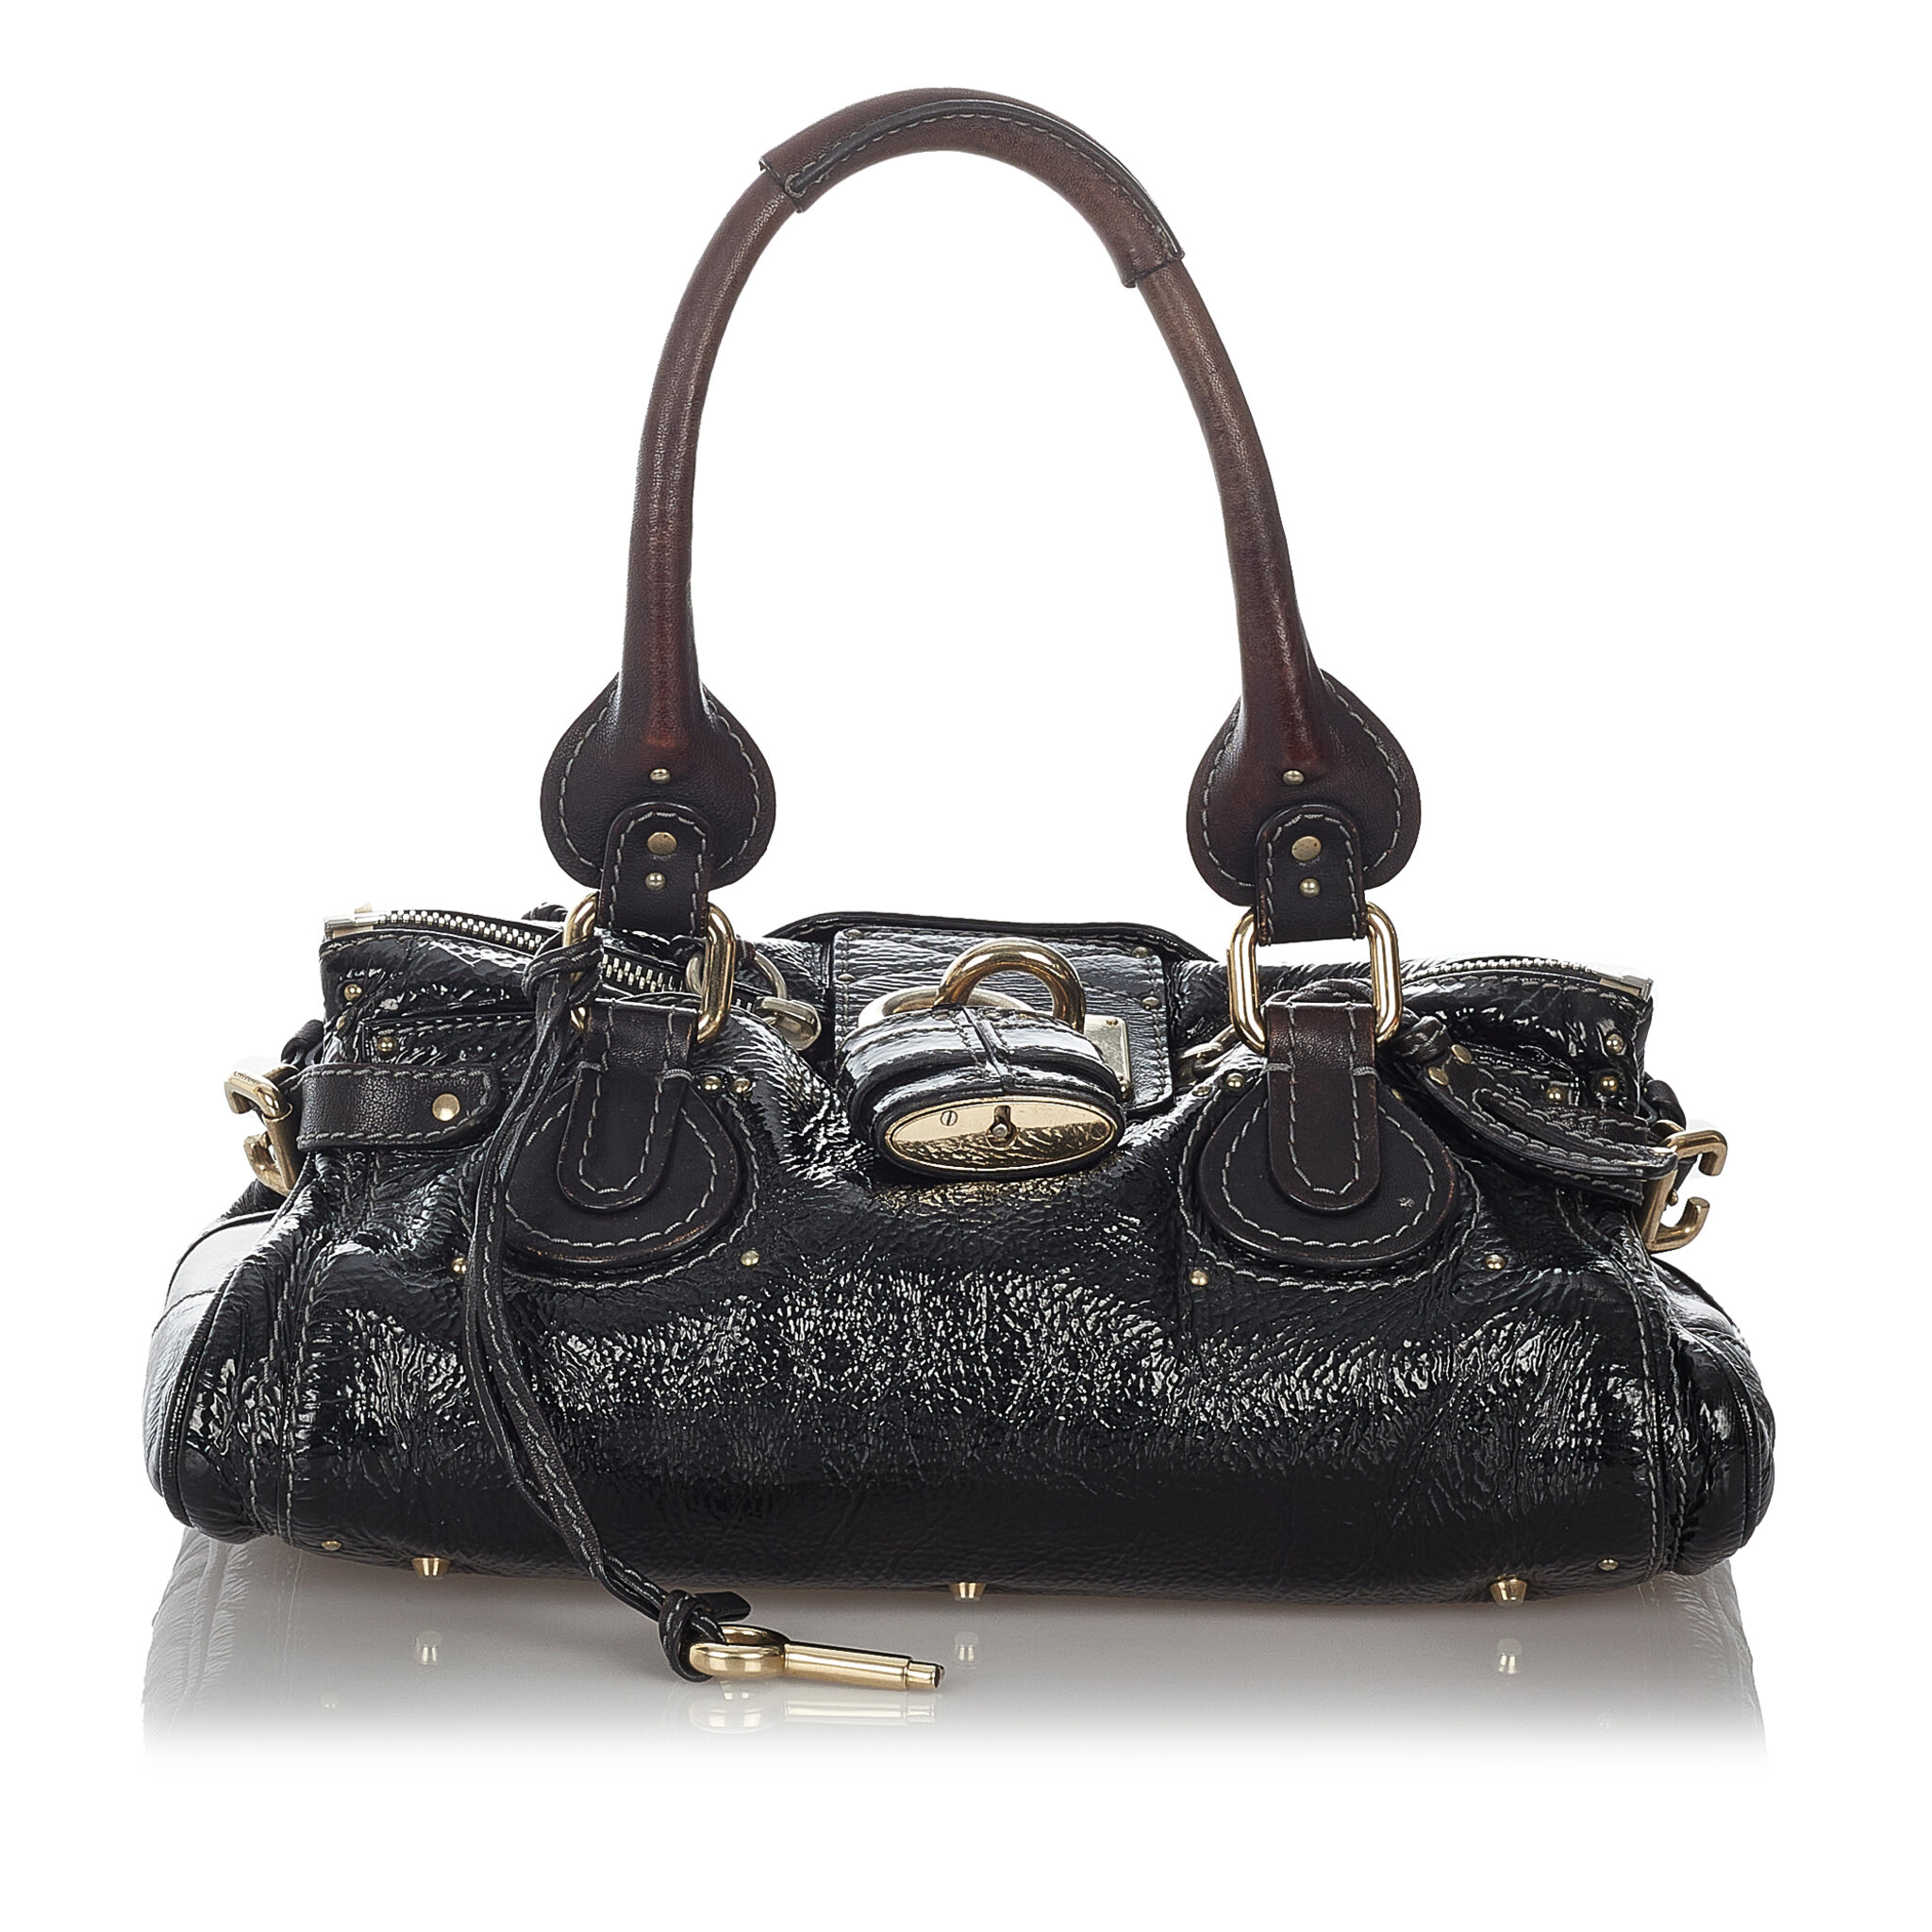 Chloe Paddington Patent Leather Handbag, ONESIZE, black